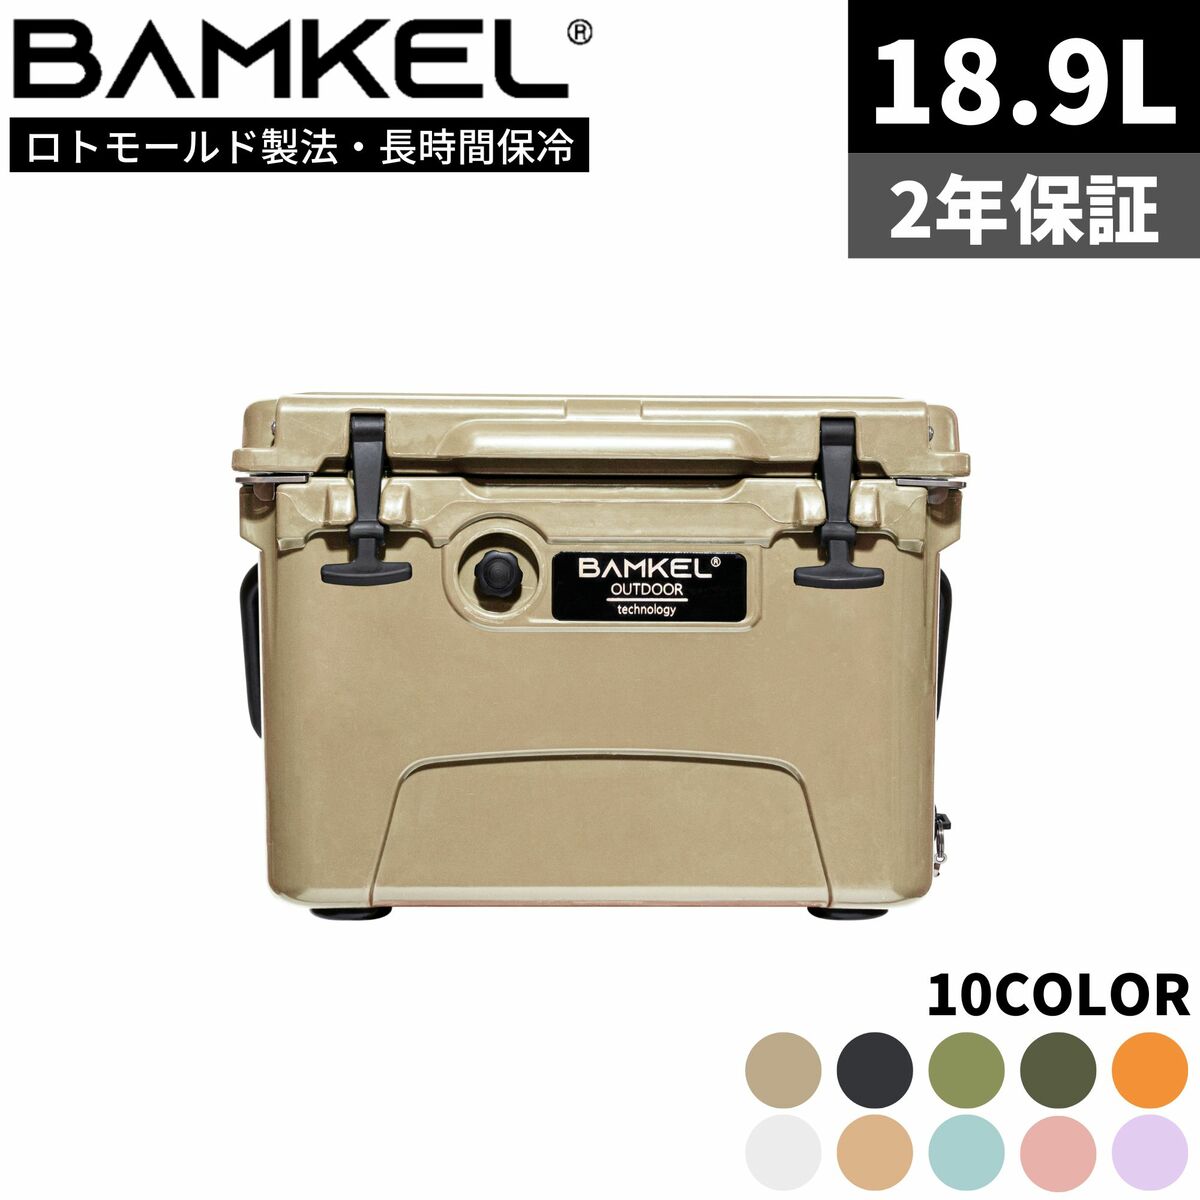 BAMKEL バンケル クーラーボックス 18.9L 長時間 保冷 選べるカラー サイズ 高耐久 ハードクーラー アウトドア キャンプ 韓国ブランド サンド 正規品